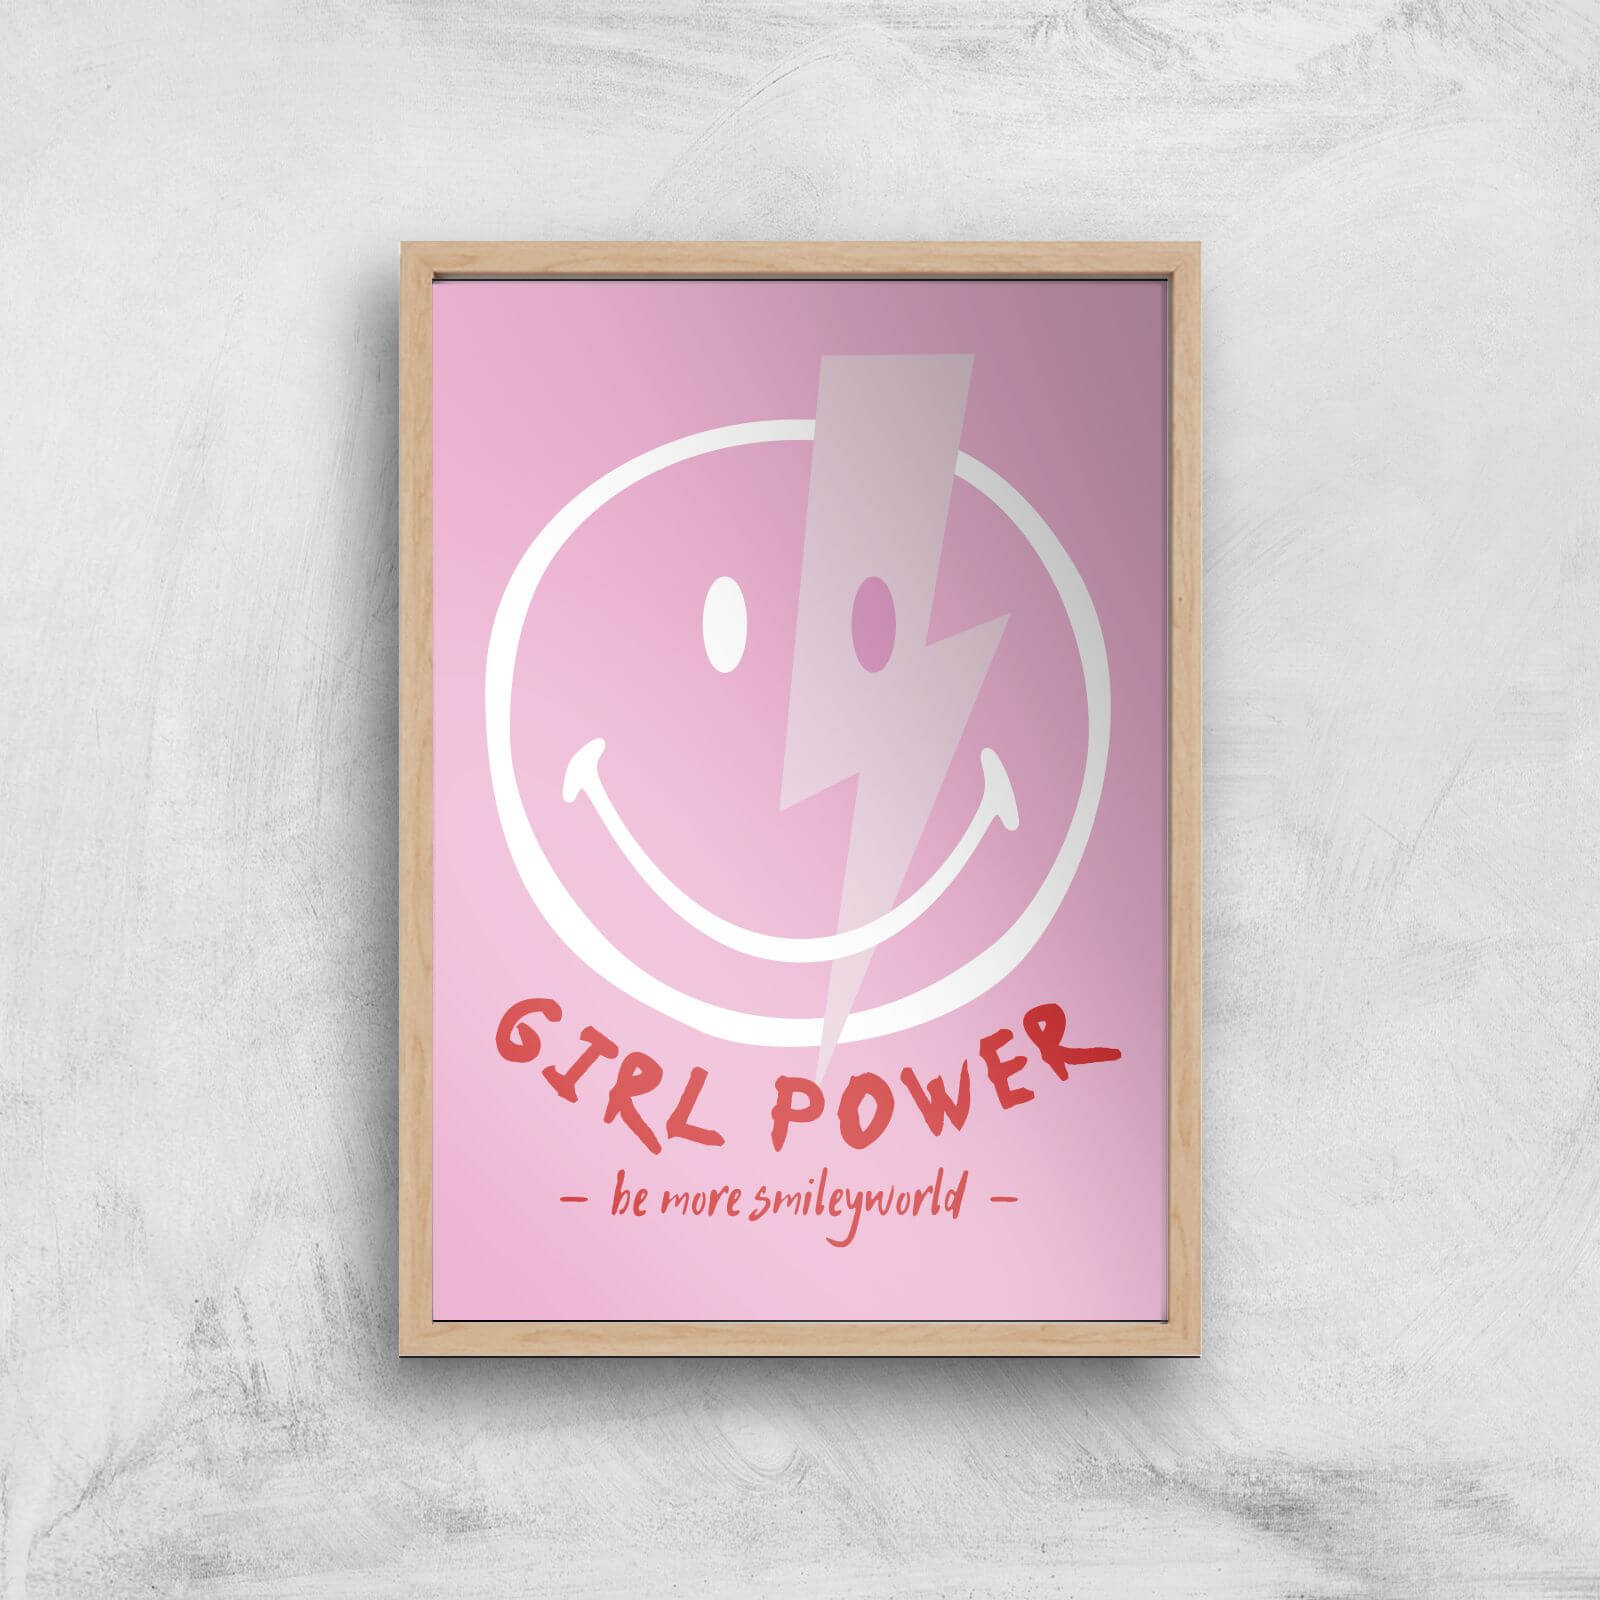 Girl Power Giclée Art Print - A4 - Wooden Frame